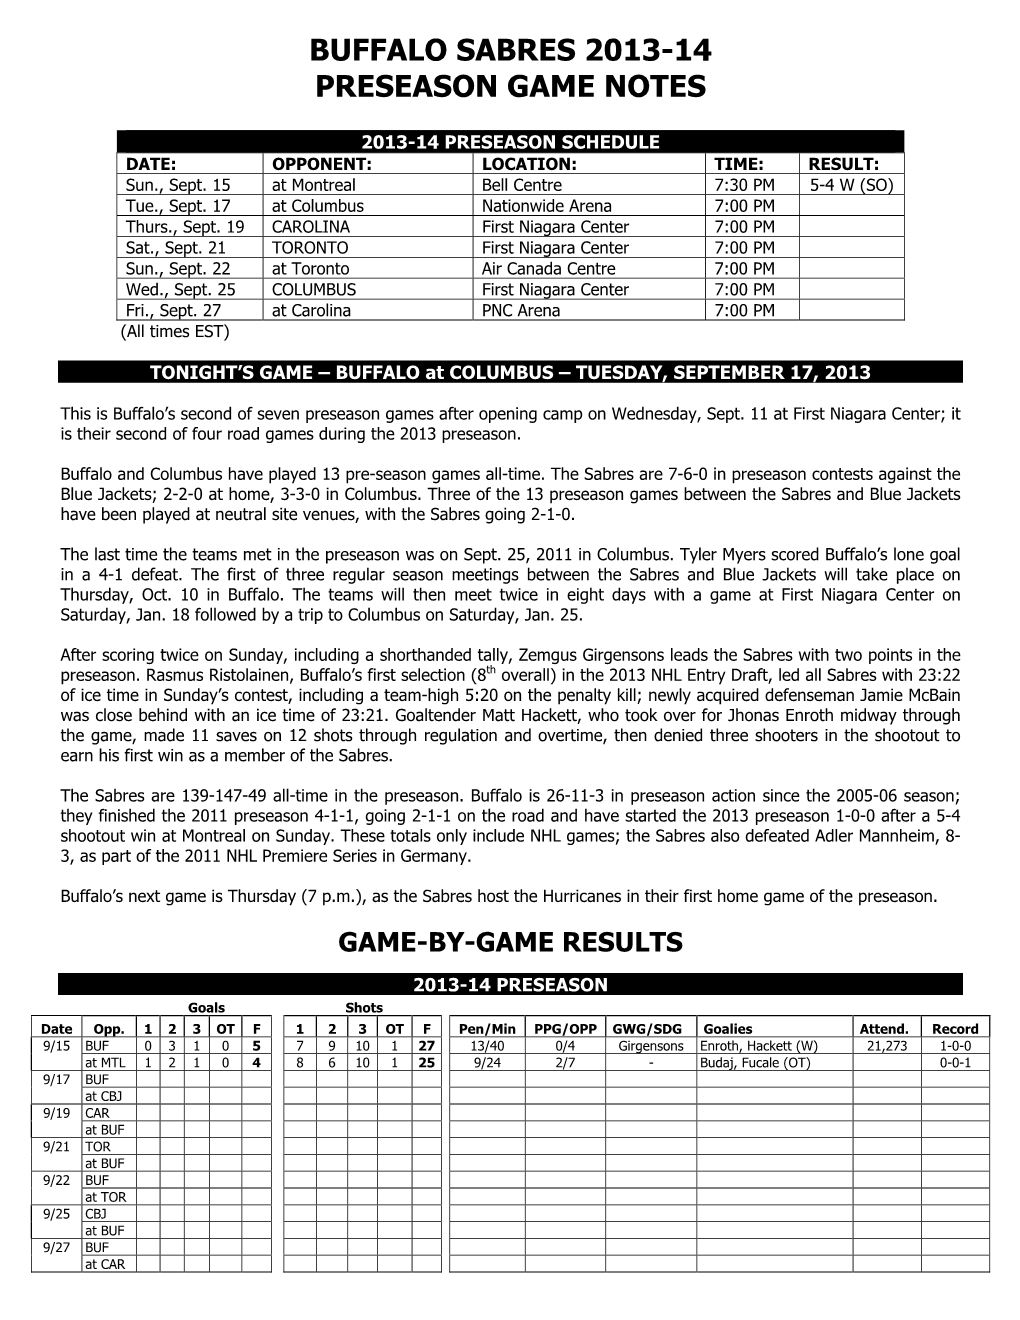 Buffalo Sabres 2013-14 Preseason Game Notes